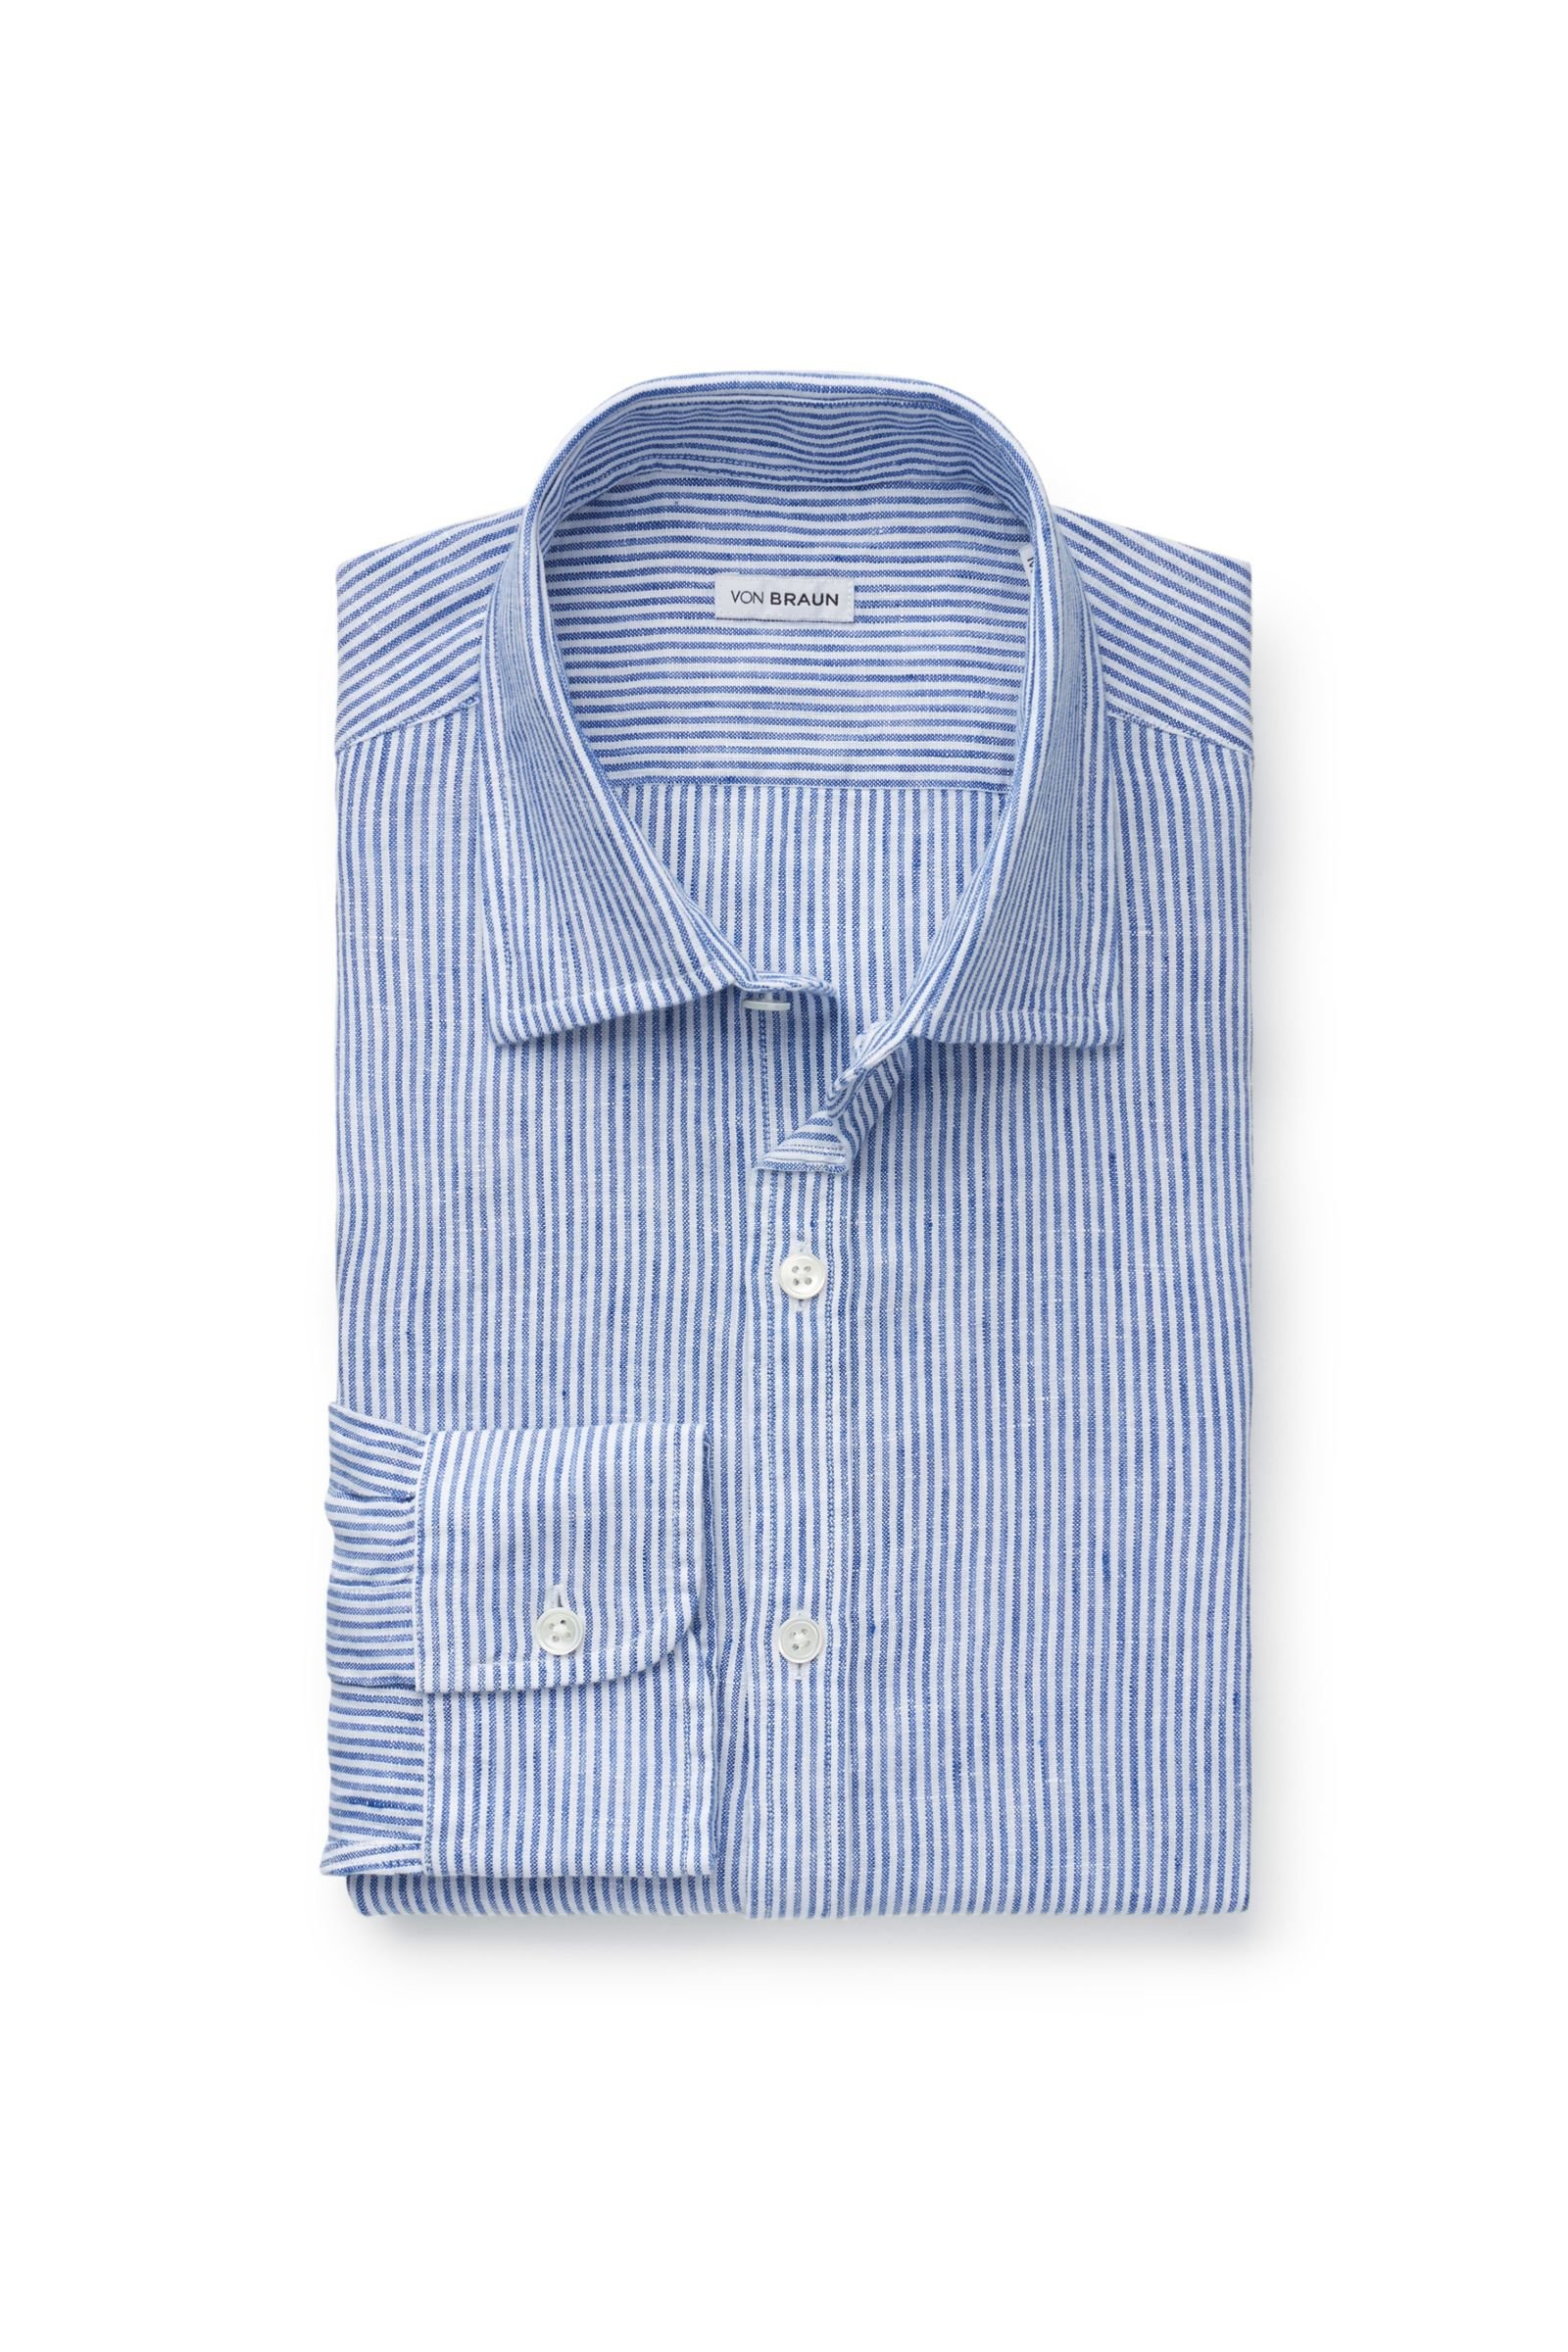 Linen shirt Kent collar grey-blue striped